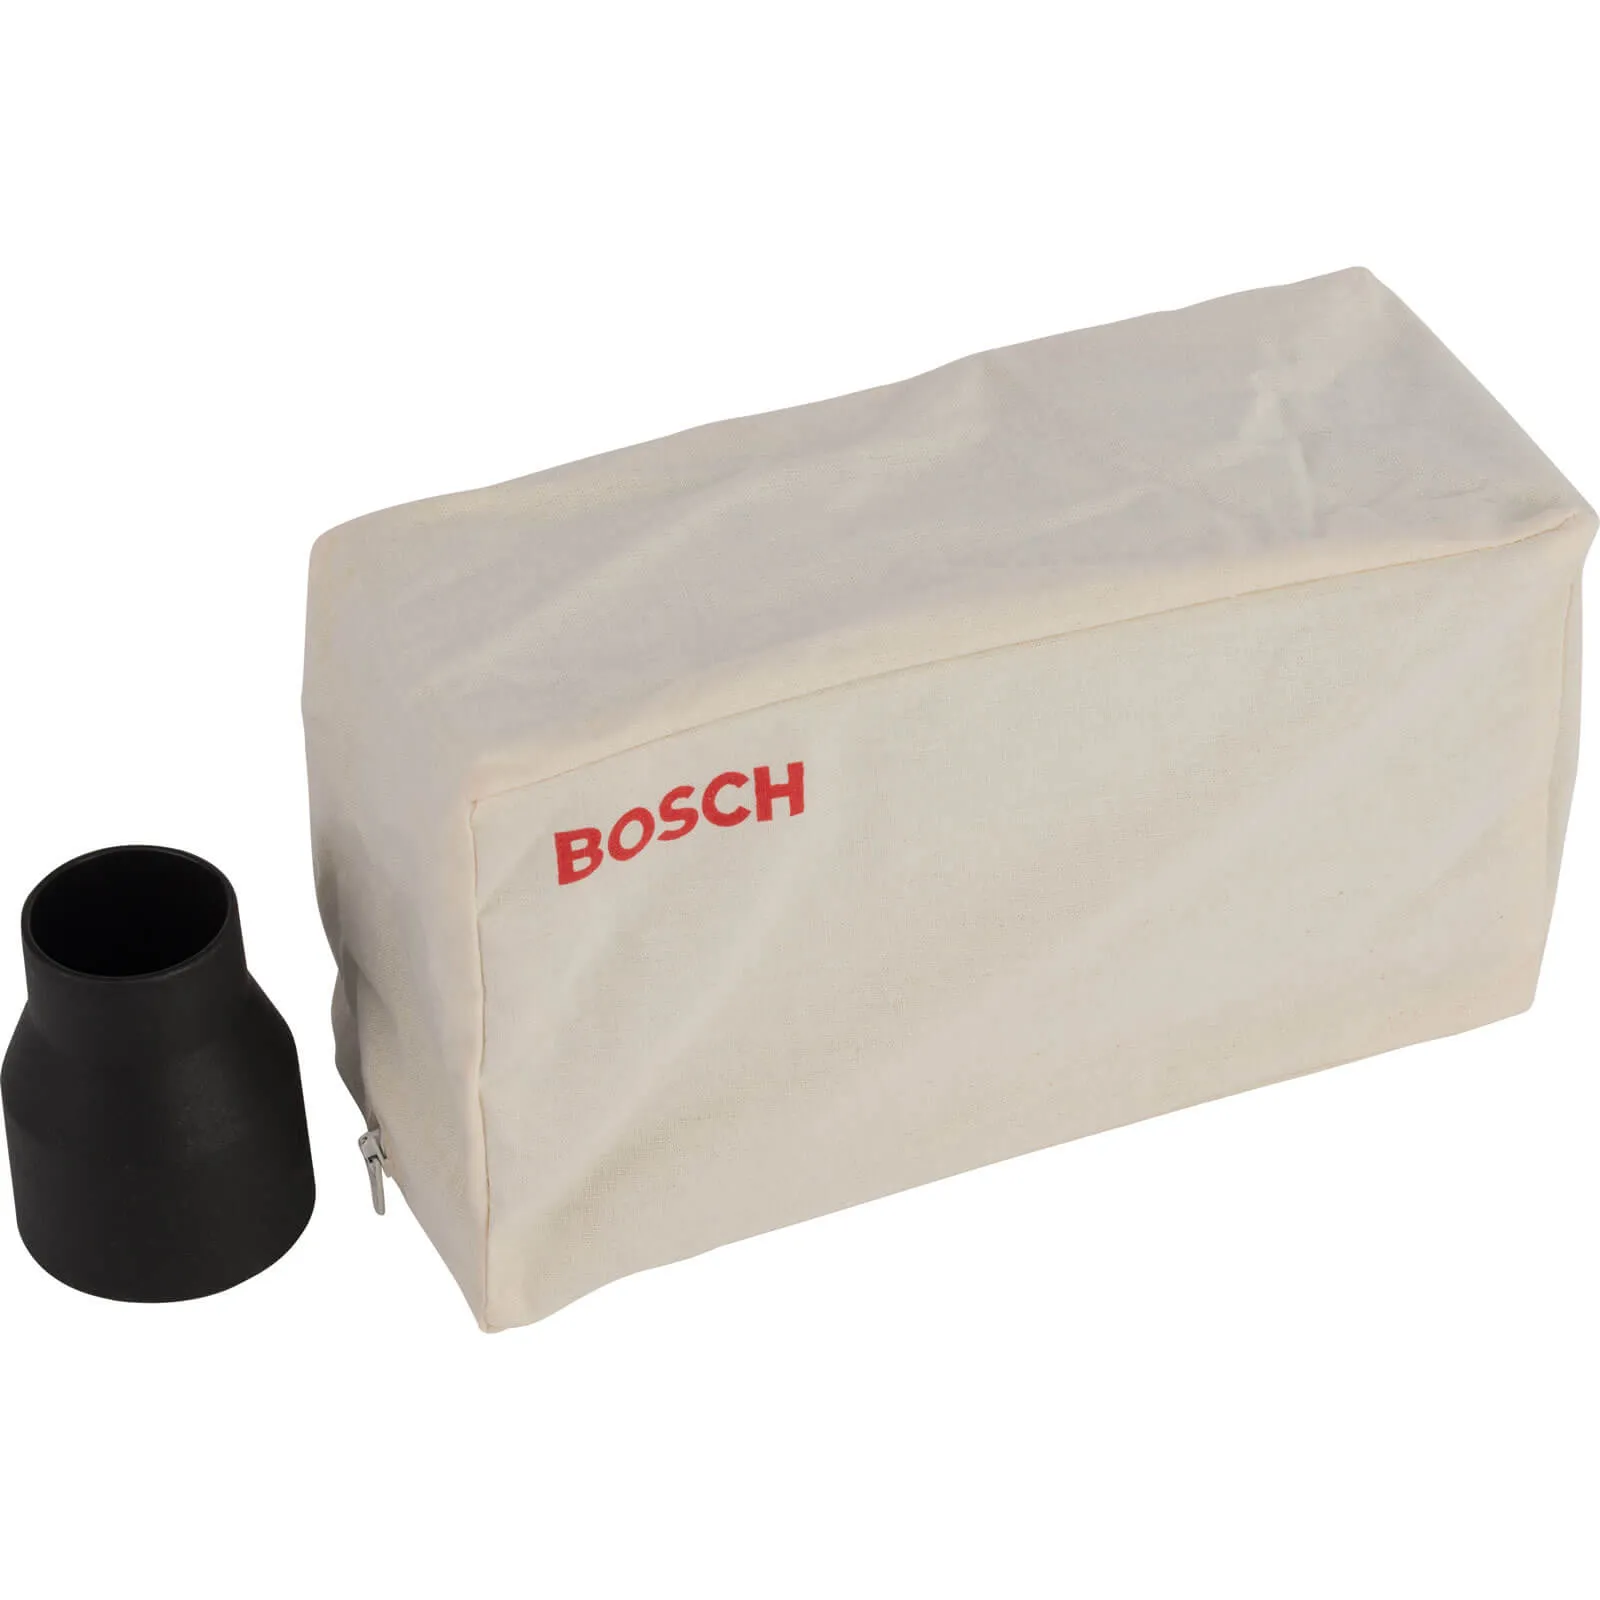 Bosch Power Tool Dust Bag